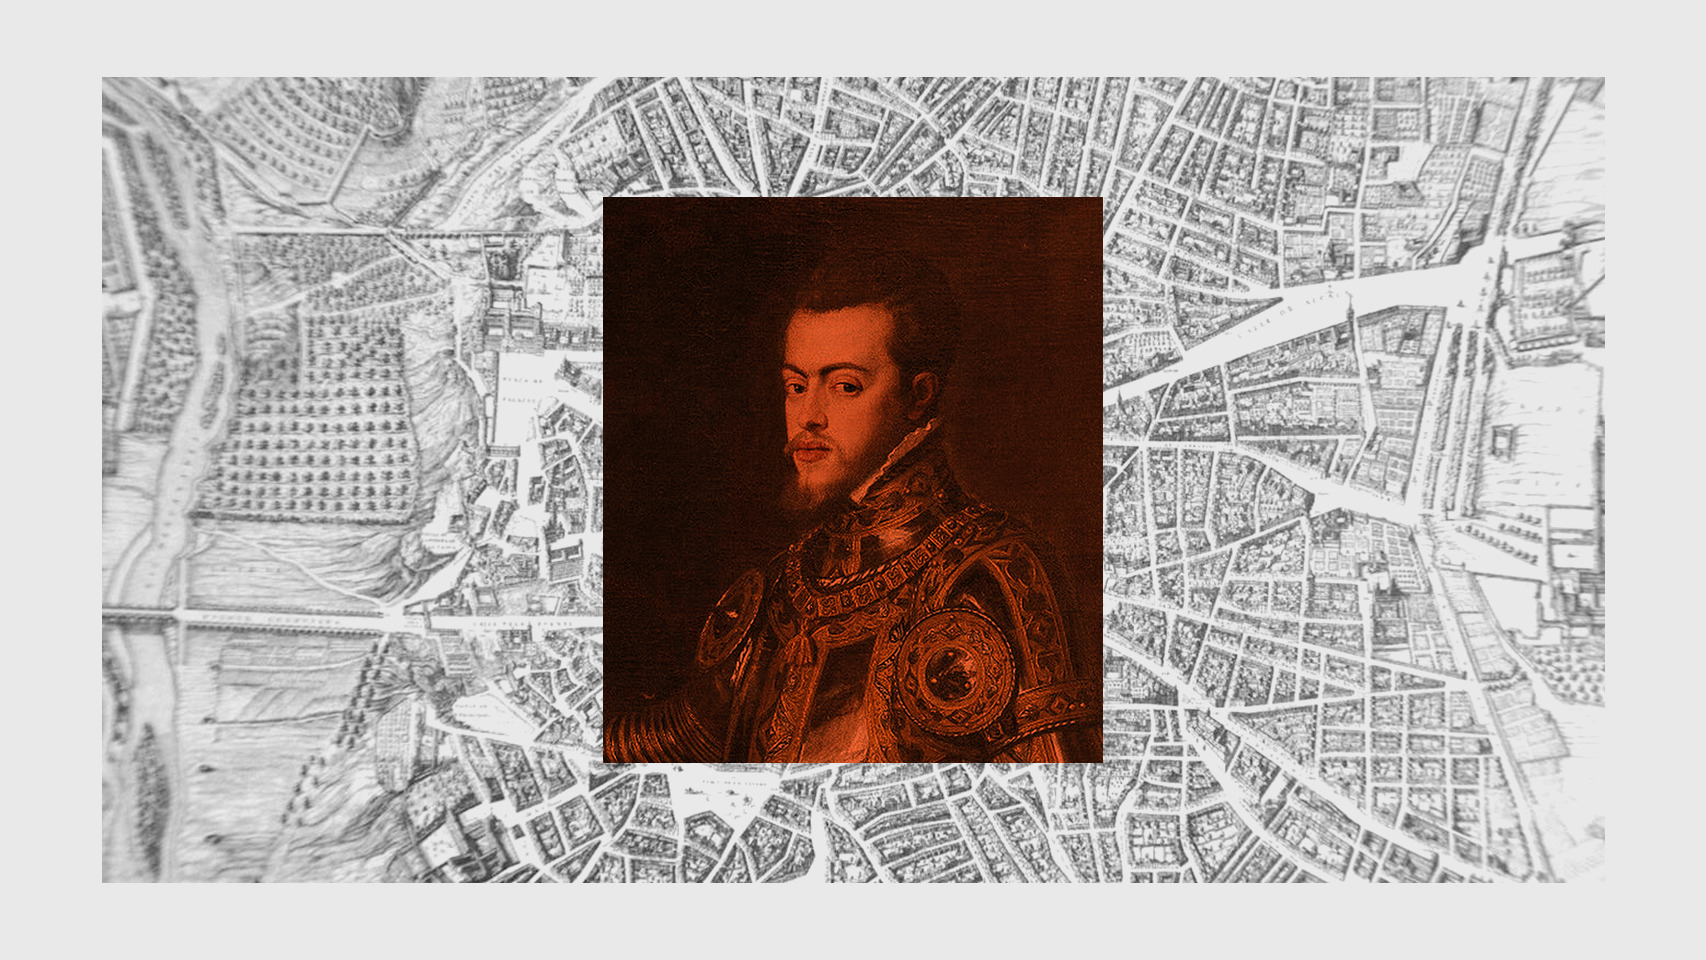 Un retrato de Felipe II sobre un mapa antiguo de Madrid.